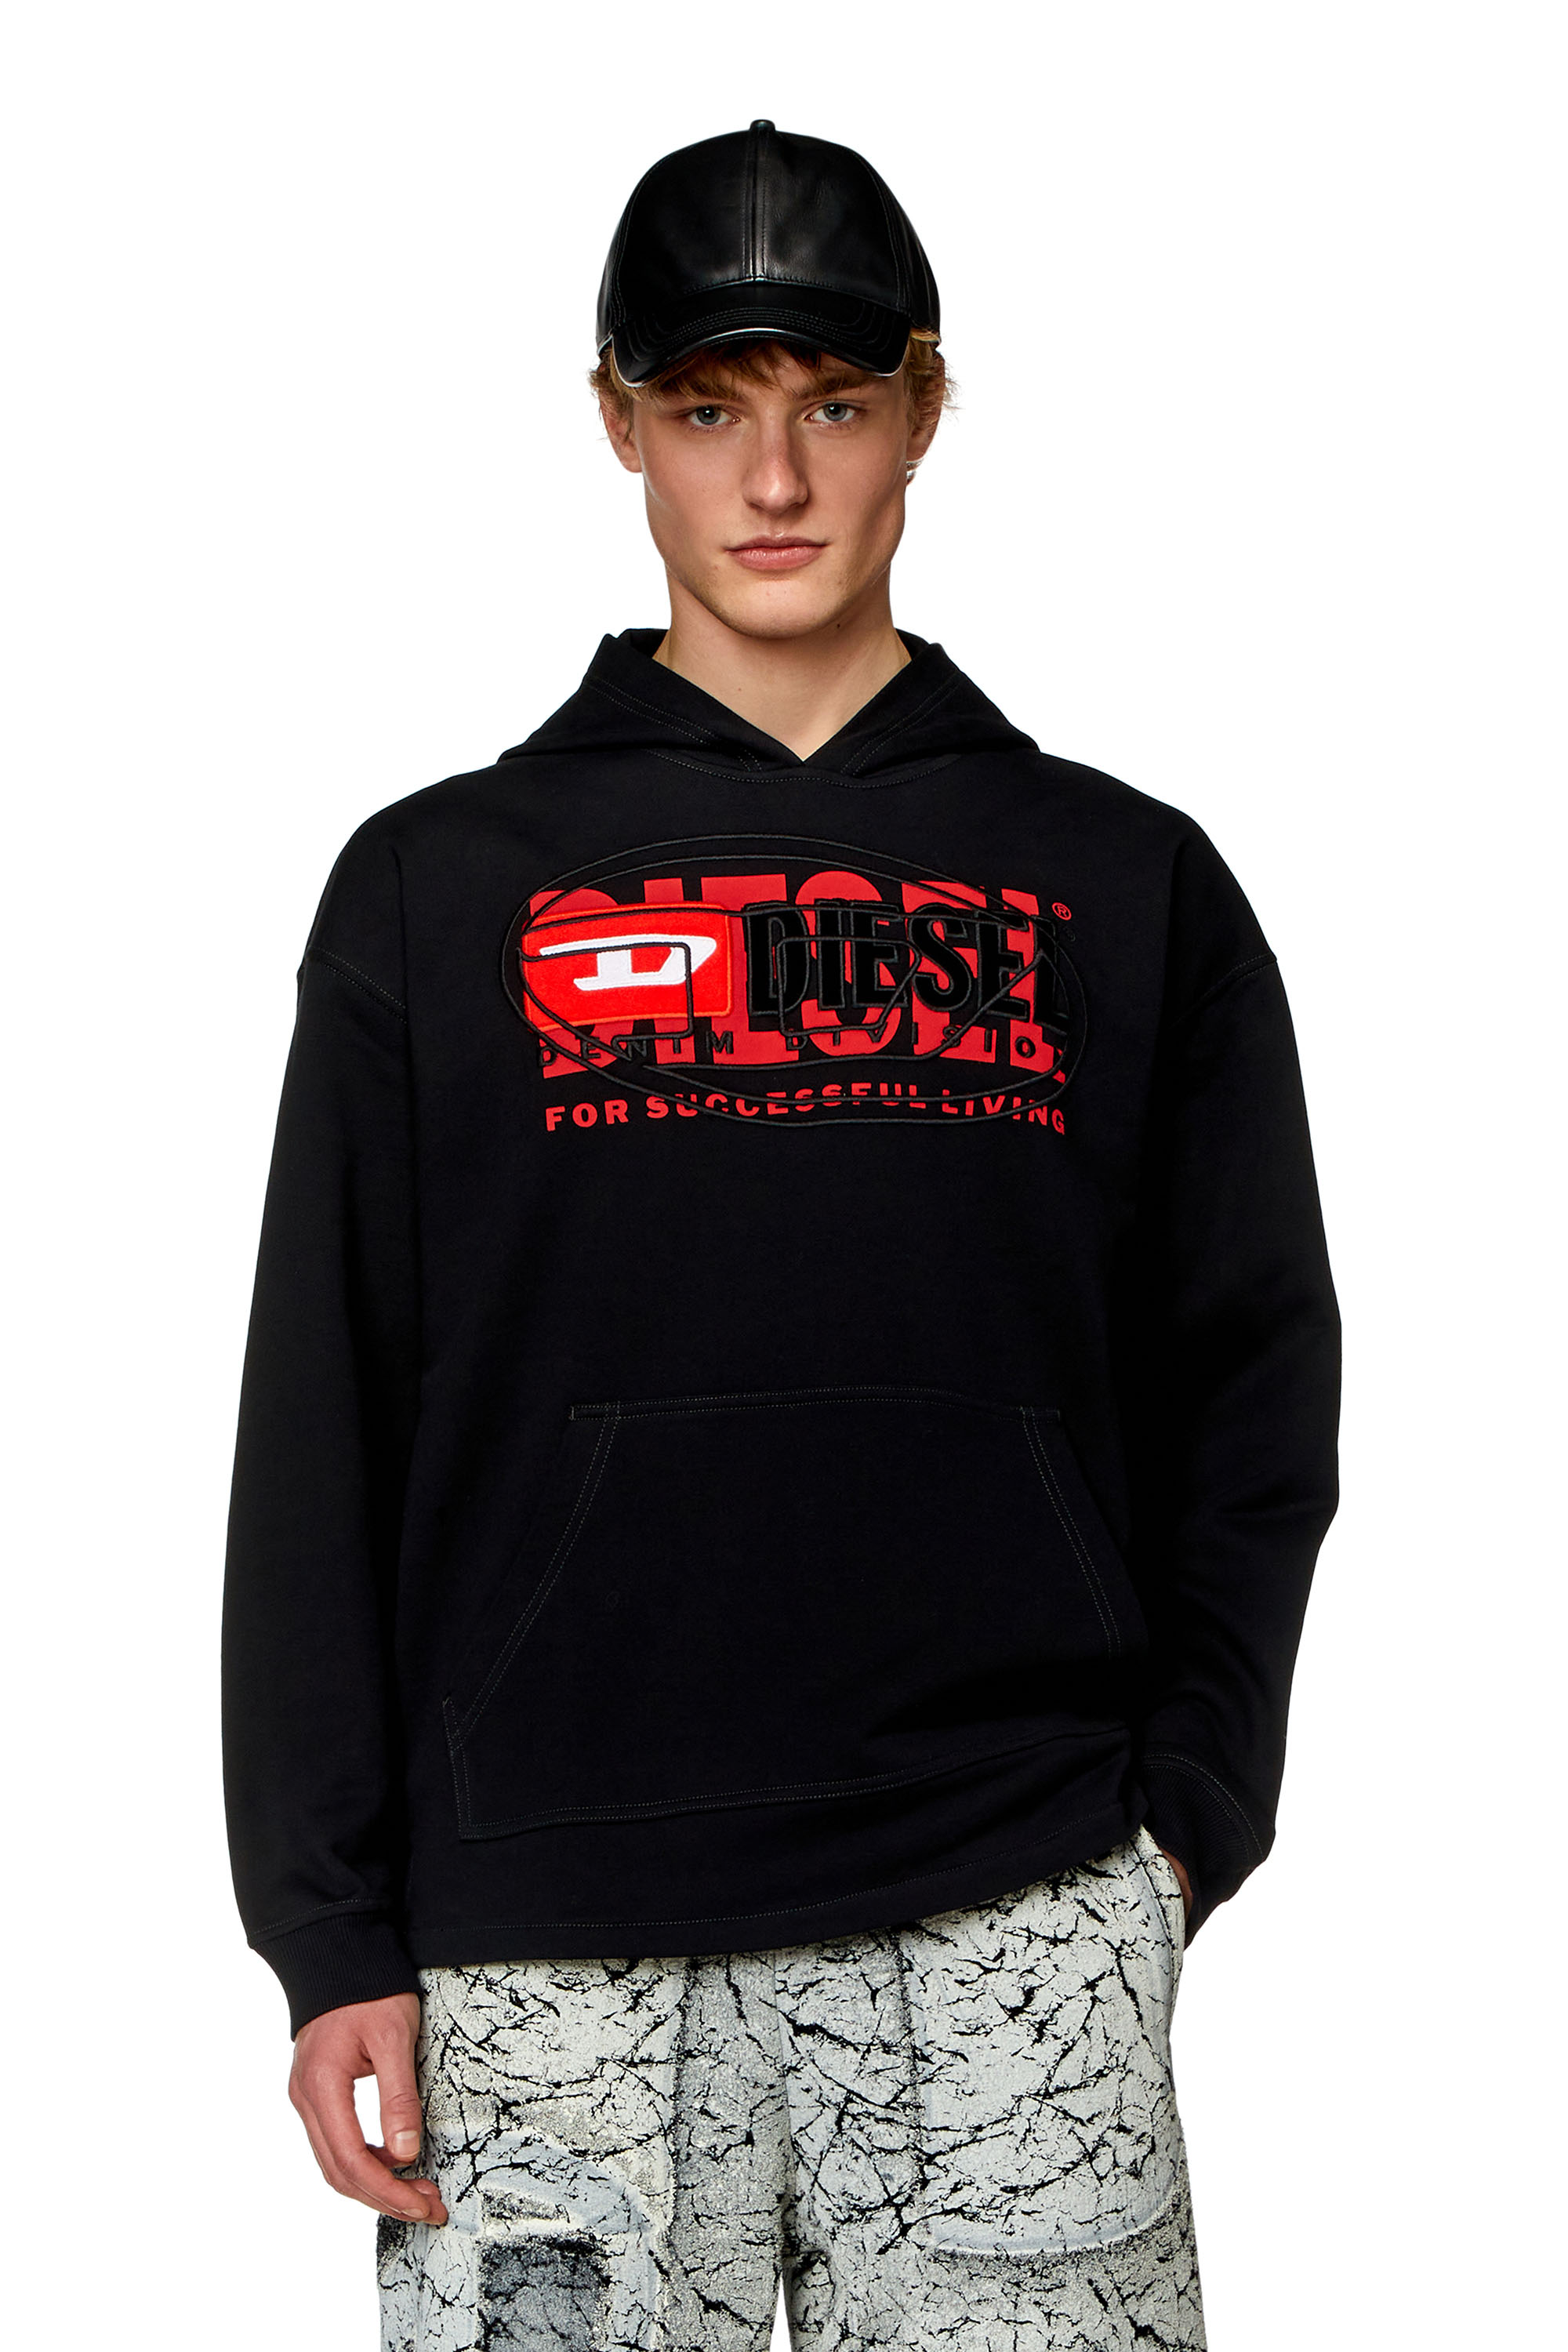 Diesel - Sweat-shirt à capuche avec logos superposés - Pull Cotton - Homme - Noir